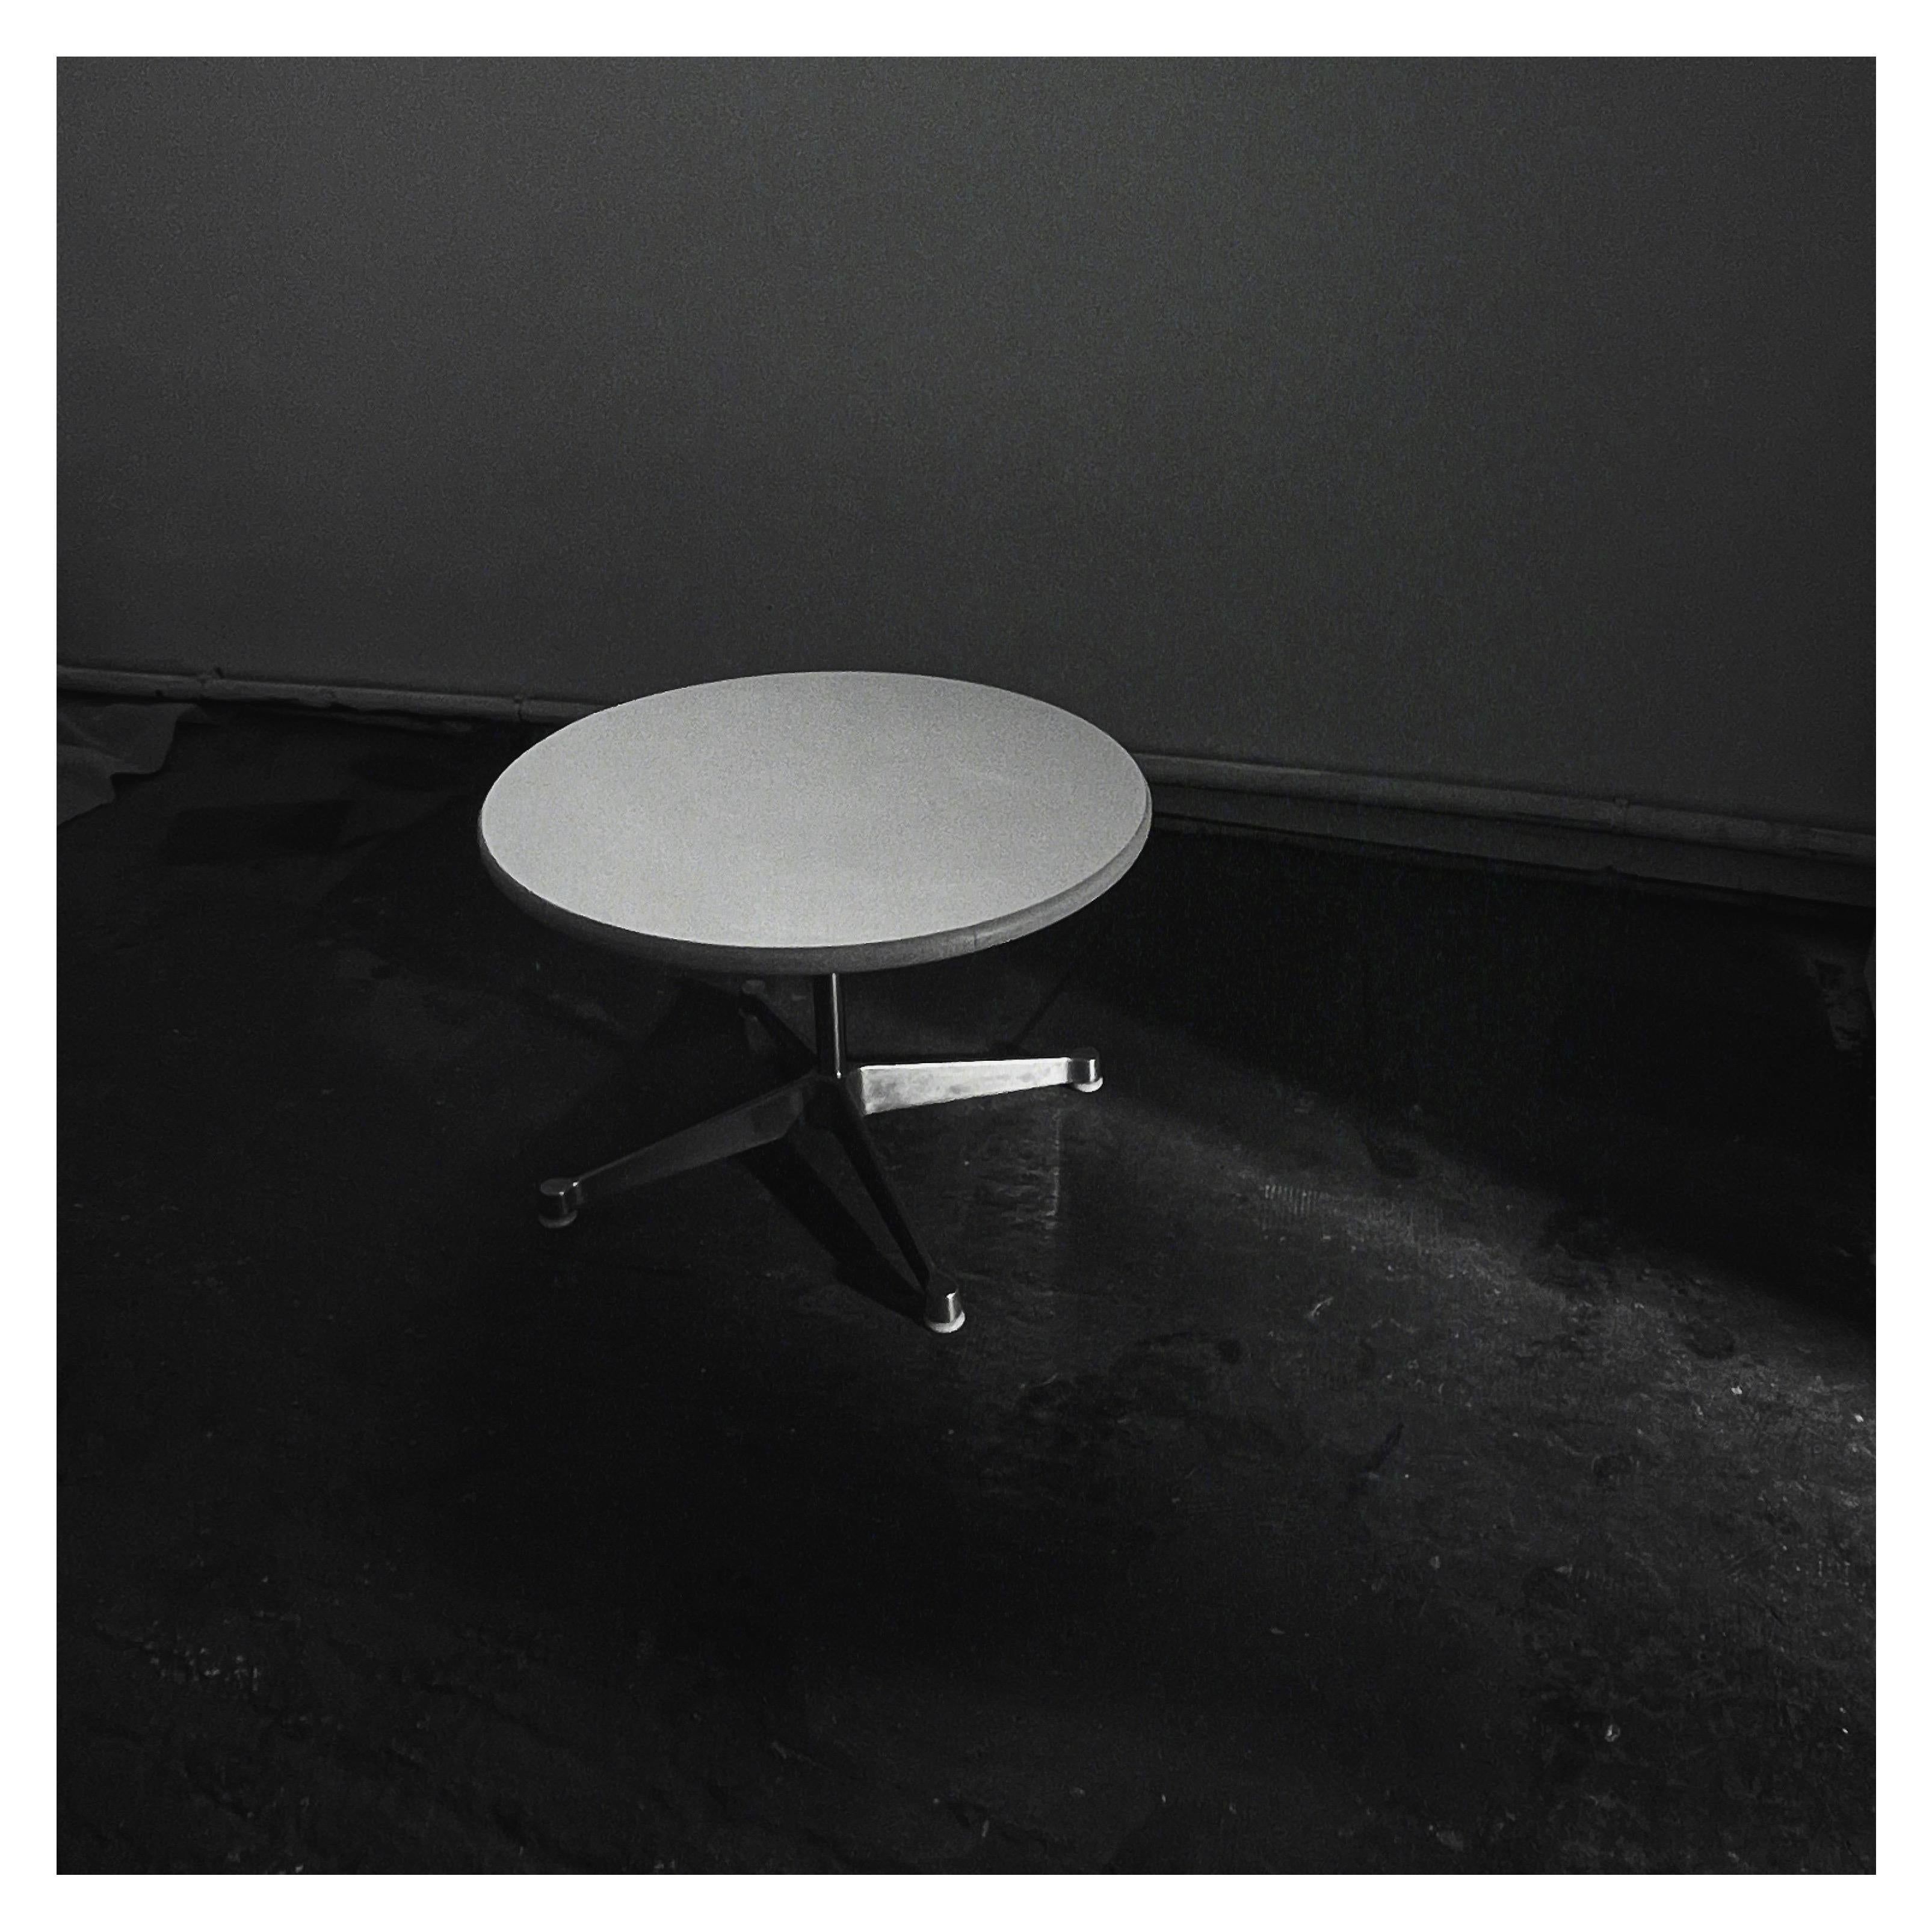 Cette table basse, table d'appoint ou coffee table de Charles & Ray Eames a été éditée par Mobilier International dans les années 1960. Elle présente un plateau en stratifié blanc avec une garniture en caoutchouc beige et est soutenue par une base